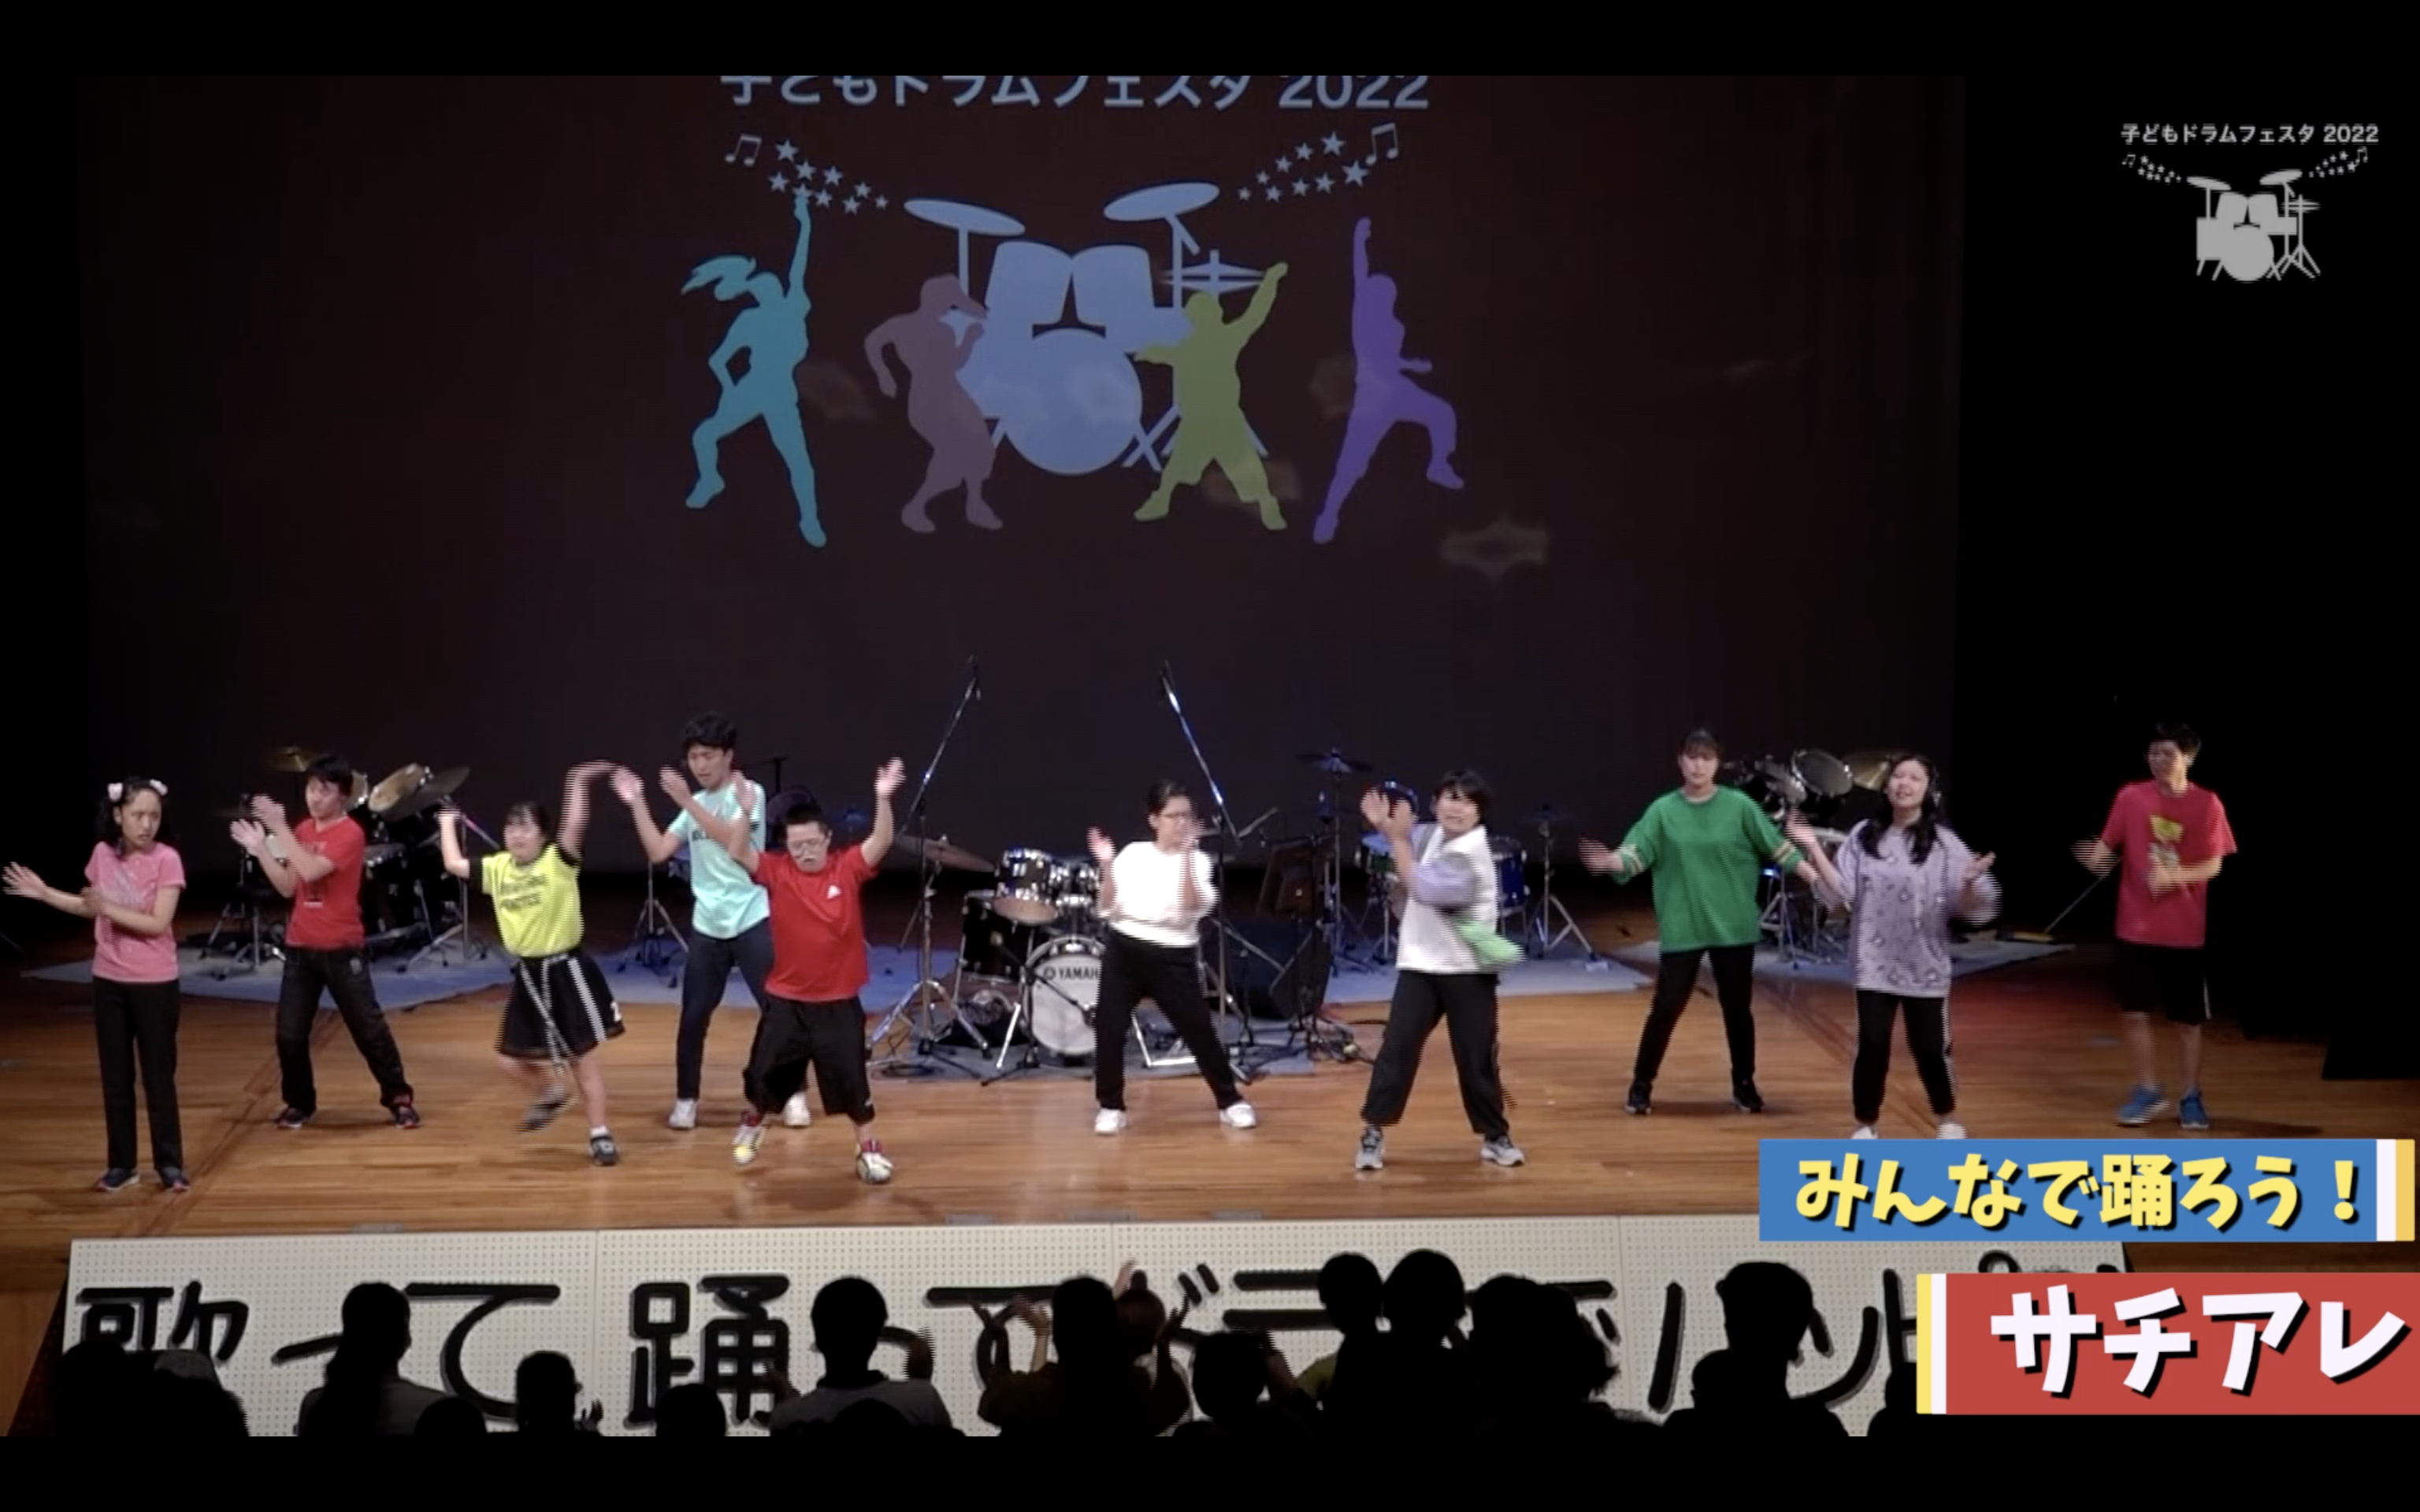 「みんなで踊ろう！」 〜ドラムフェスタ2022 ダンス体験〜